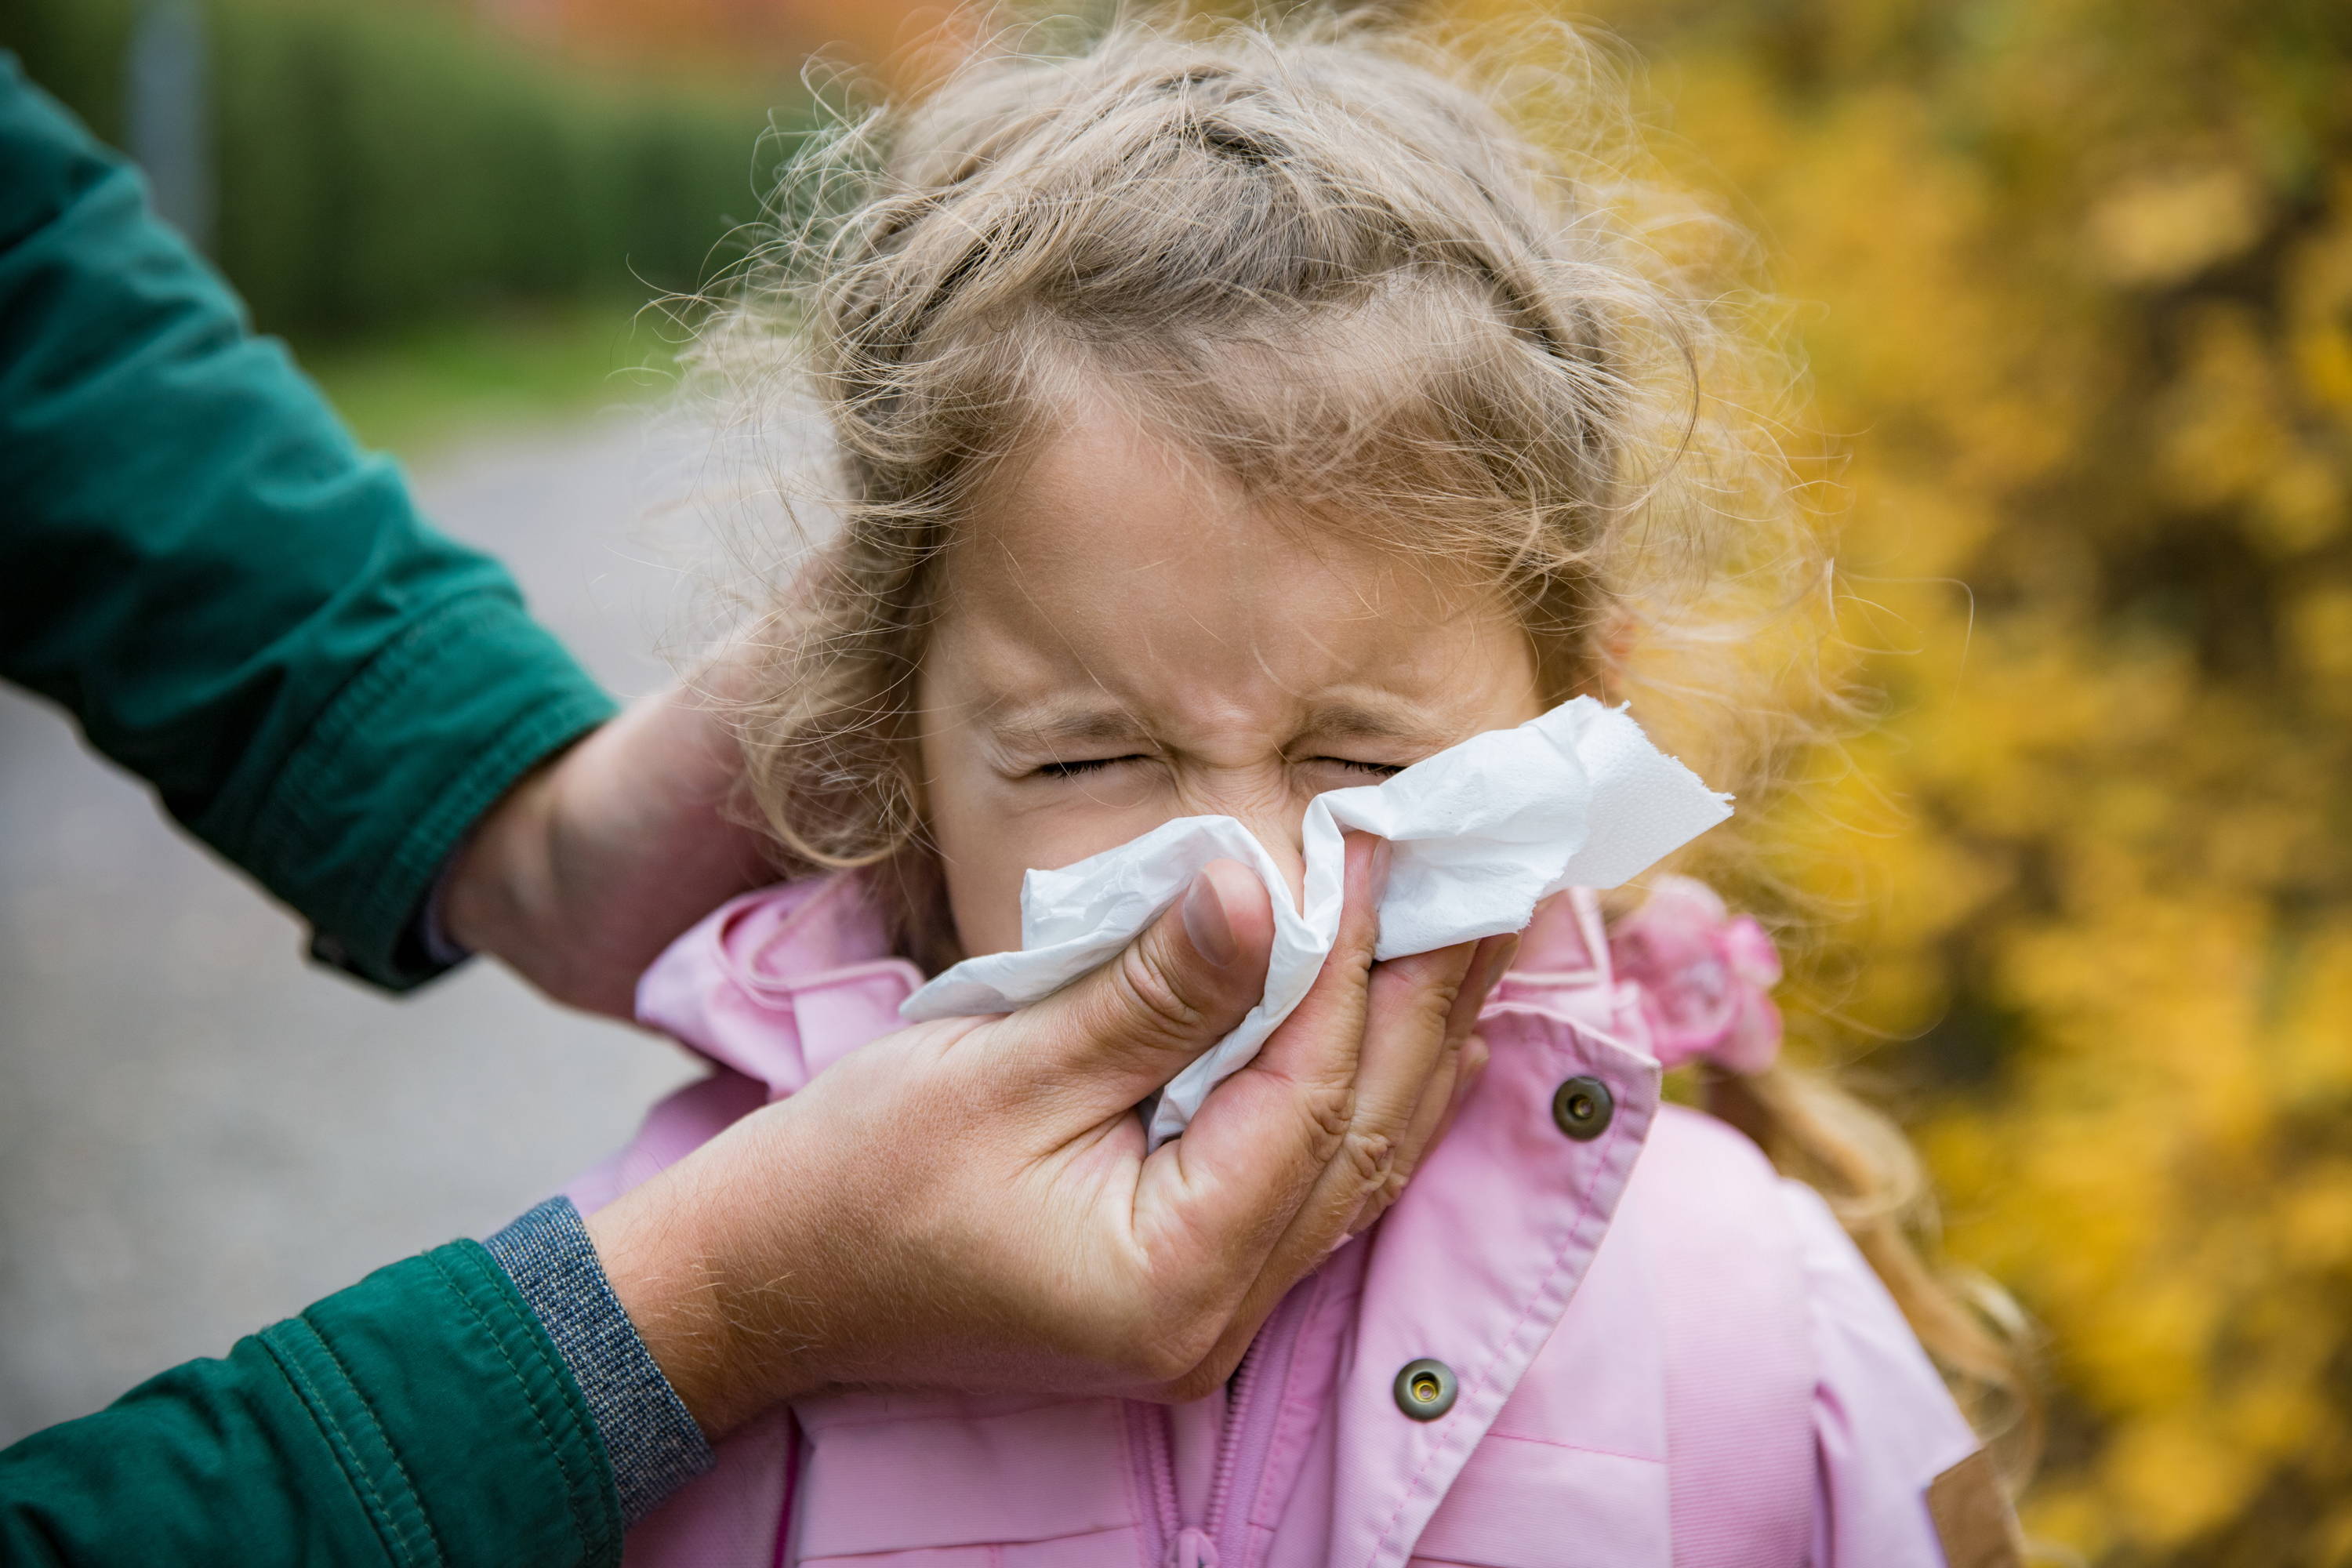 Ein Mädchen in einer pinkfarbenen Regenjacke bekommt von ihrem Vater Hilfe beim Naseschnäuzen. Sie befinden sich im Freien und das Mädchen zeigt vielleicht Symptome einer Allergie.